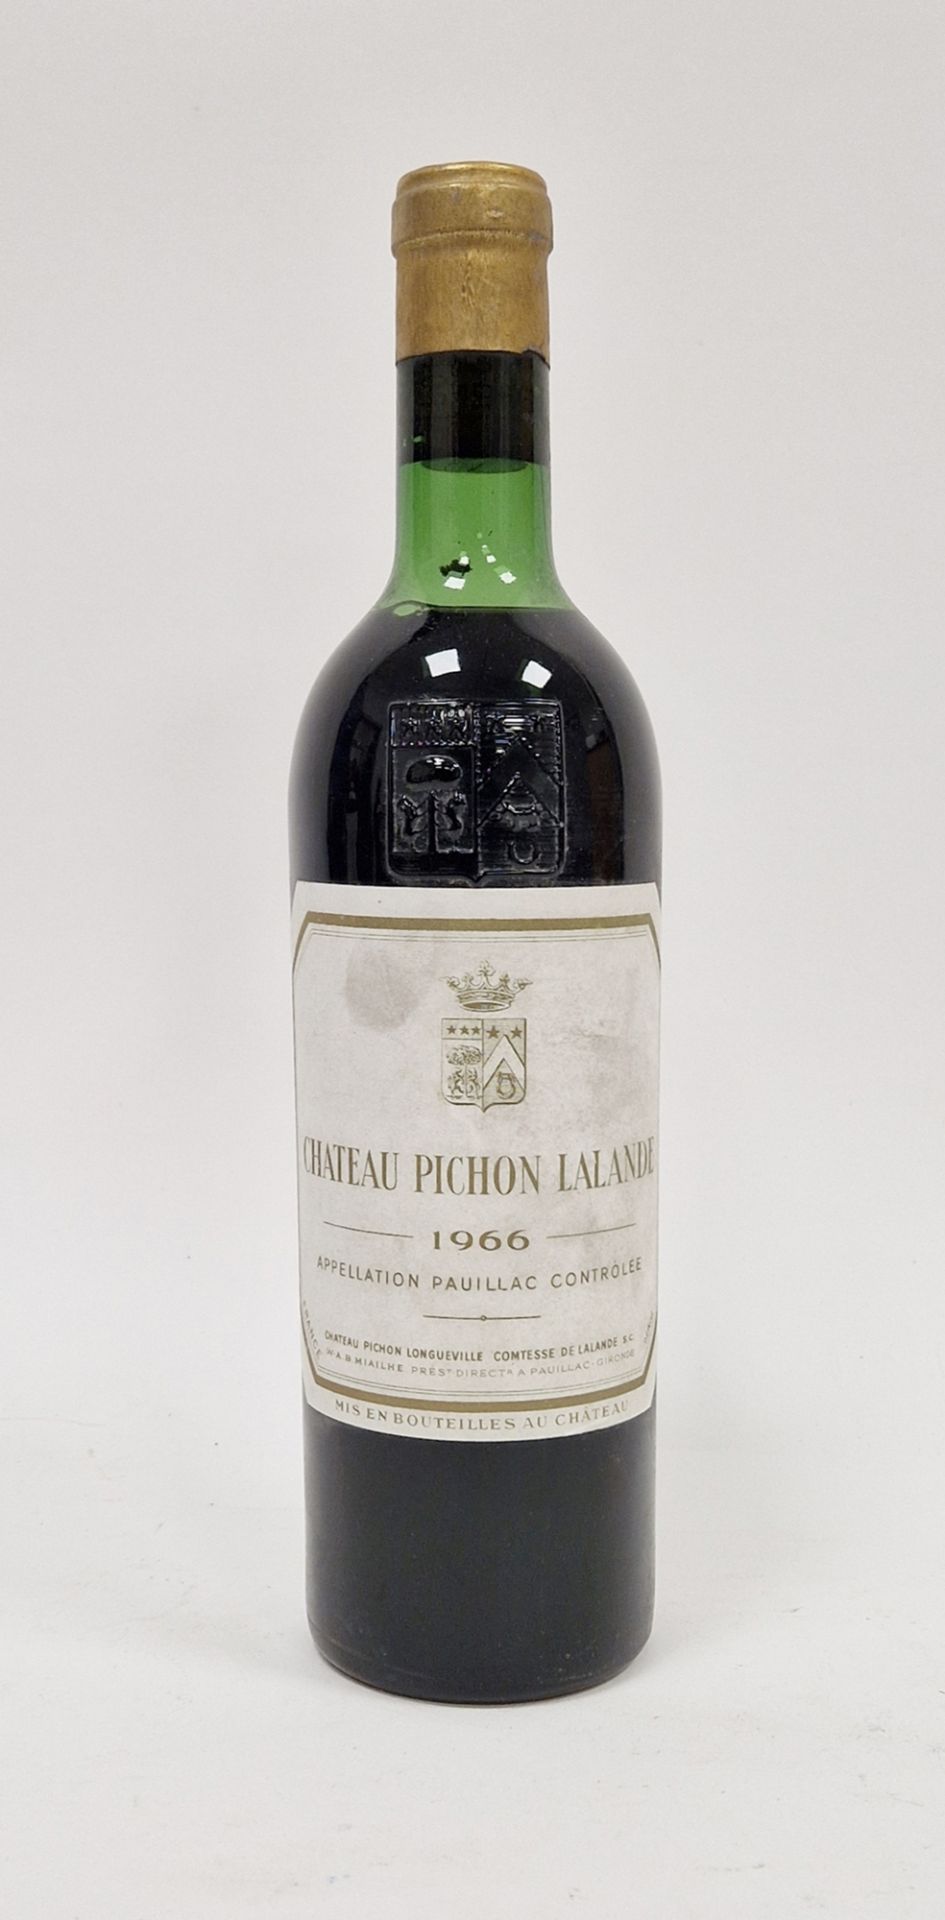 Bottle of Chateau Pichon Lalande Chateau Pichon Longueville, Comtesse de Lalande 1966 (low neck)